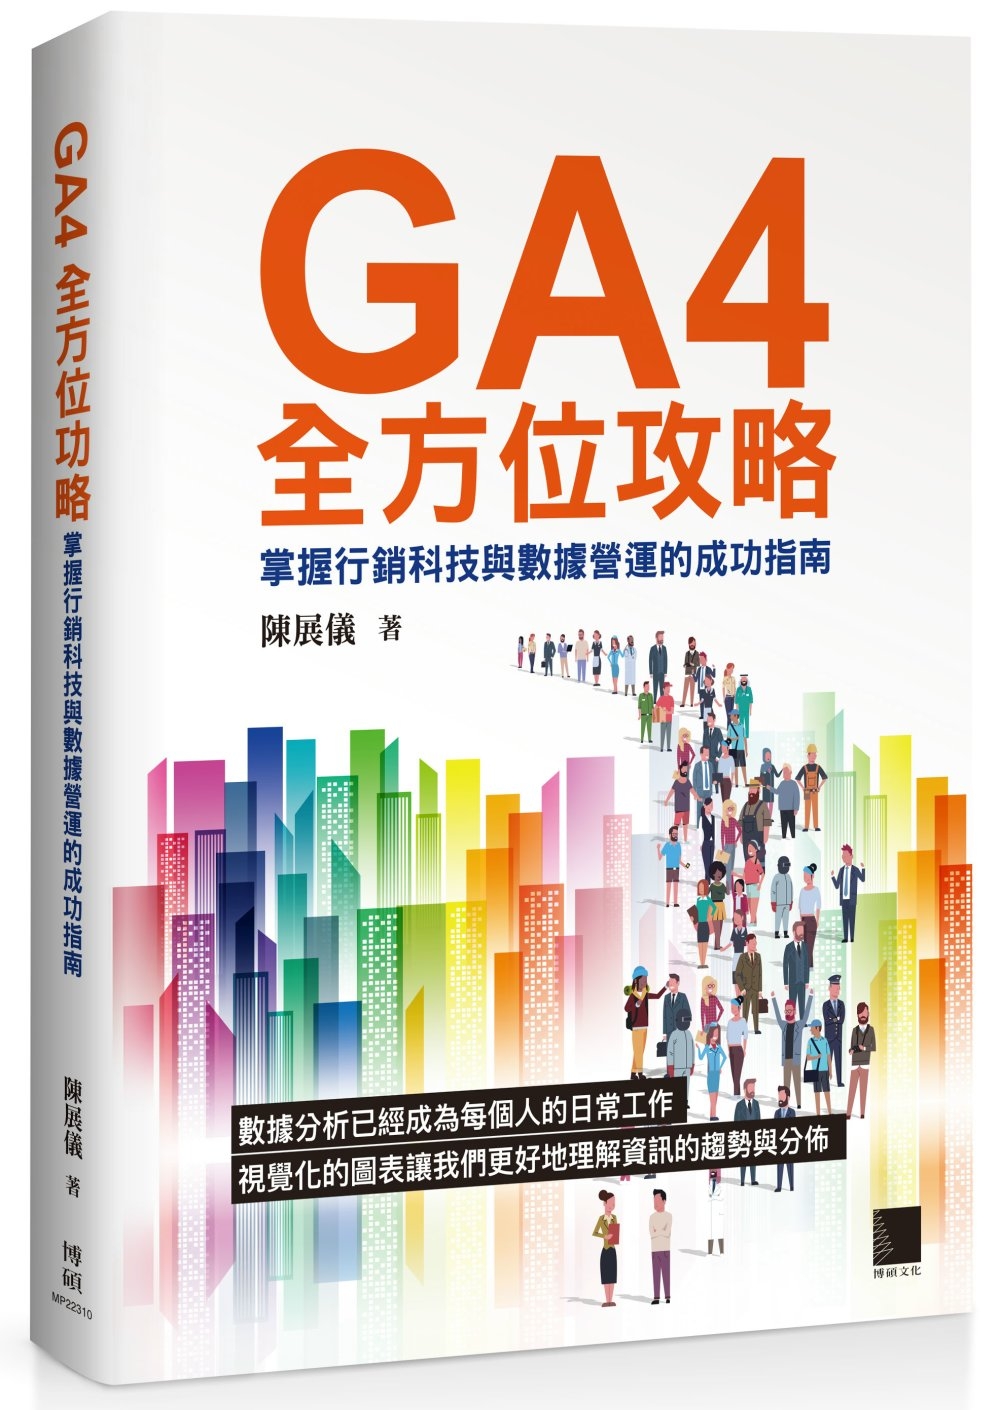 GA4全方位攻略：掌握行銷科技與數據營運的成功指南